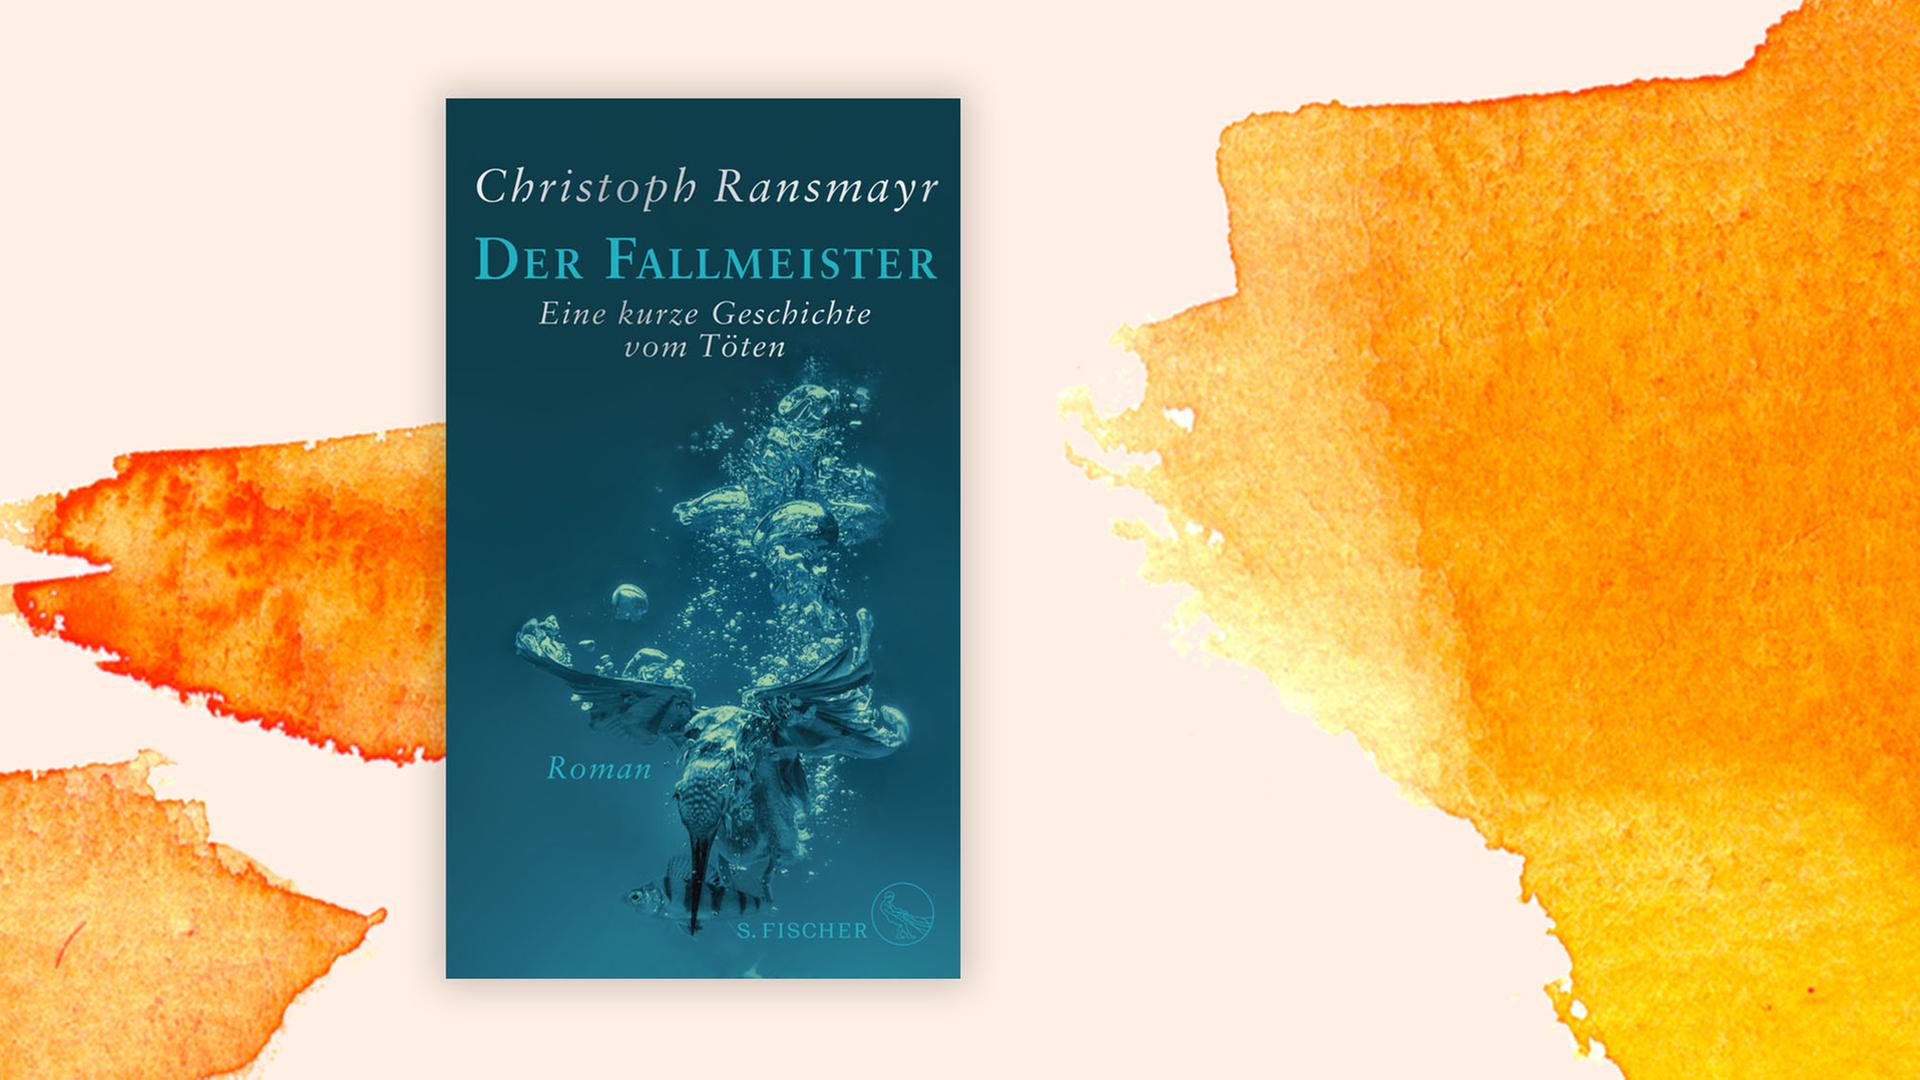 Das Cover zu "Der Fallmeister" von Christoph Ransmayr zeigt einen Vogel, der unter Wasser nach einem kleinen Fisch schnappt. Das Cover liegt auf einem orangenem Aquarell.